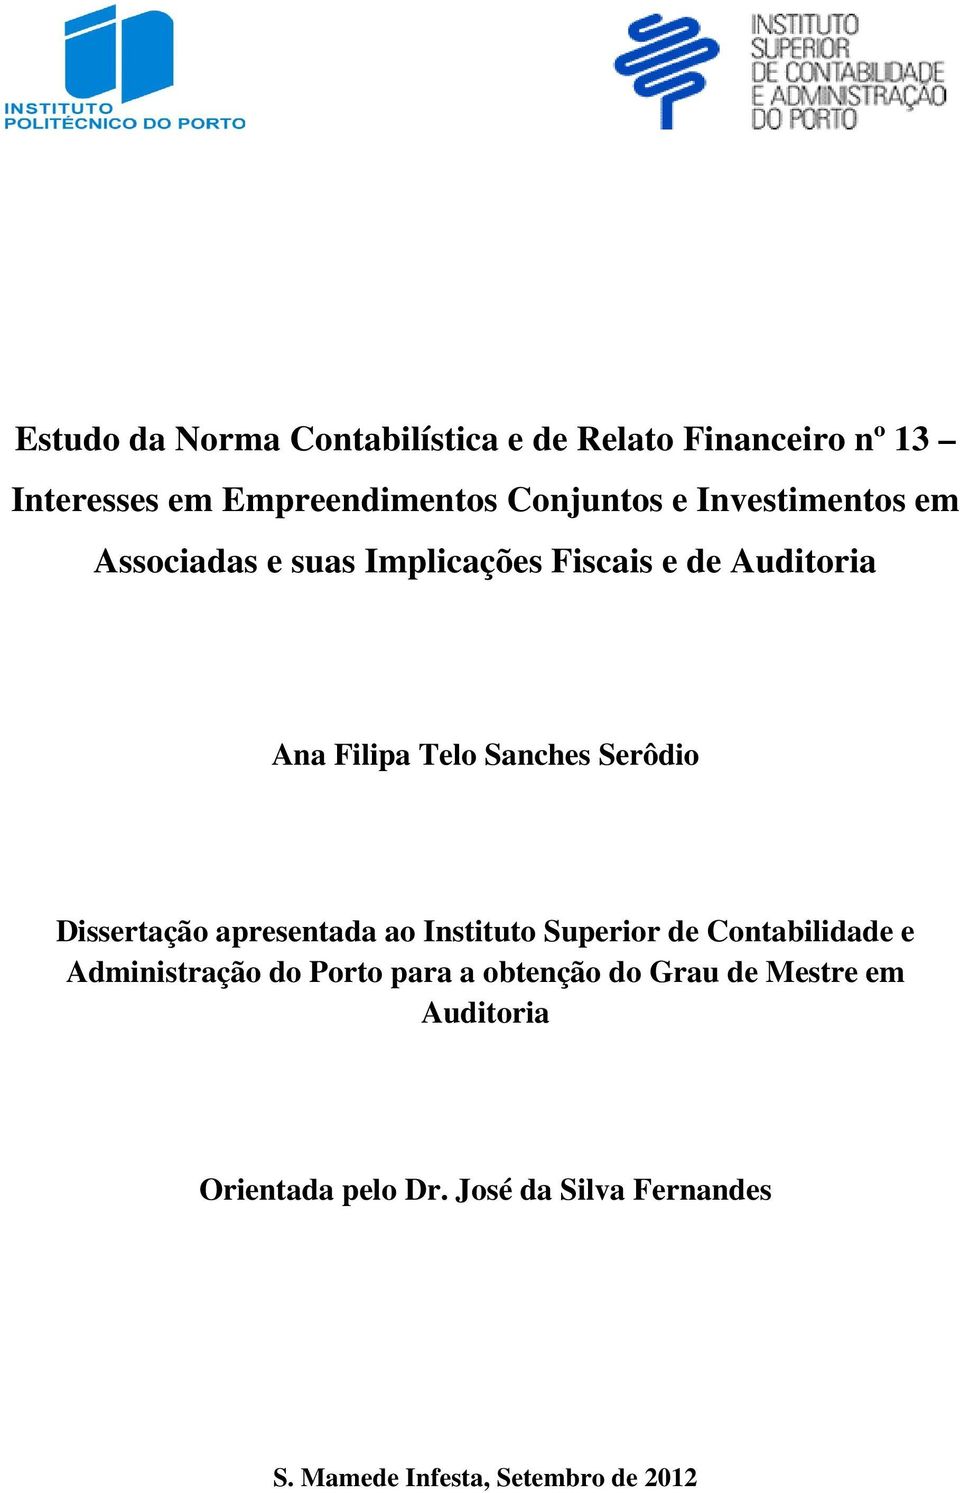 Dissertação apresentada ao Instituto Superior de Contabilidade e Administração do Porto para a obtenção